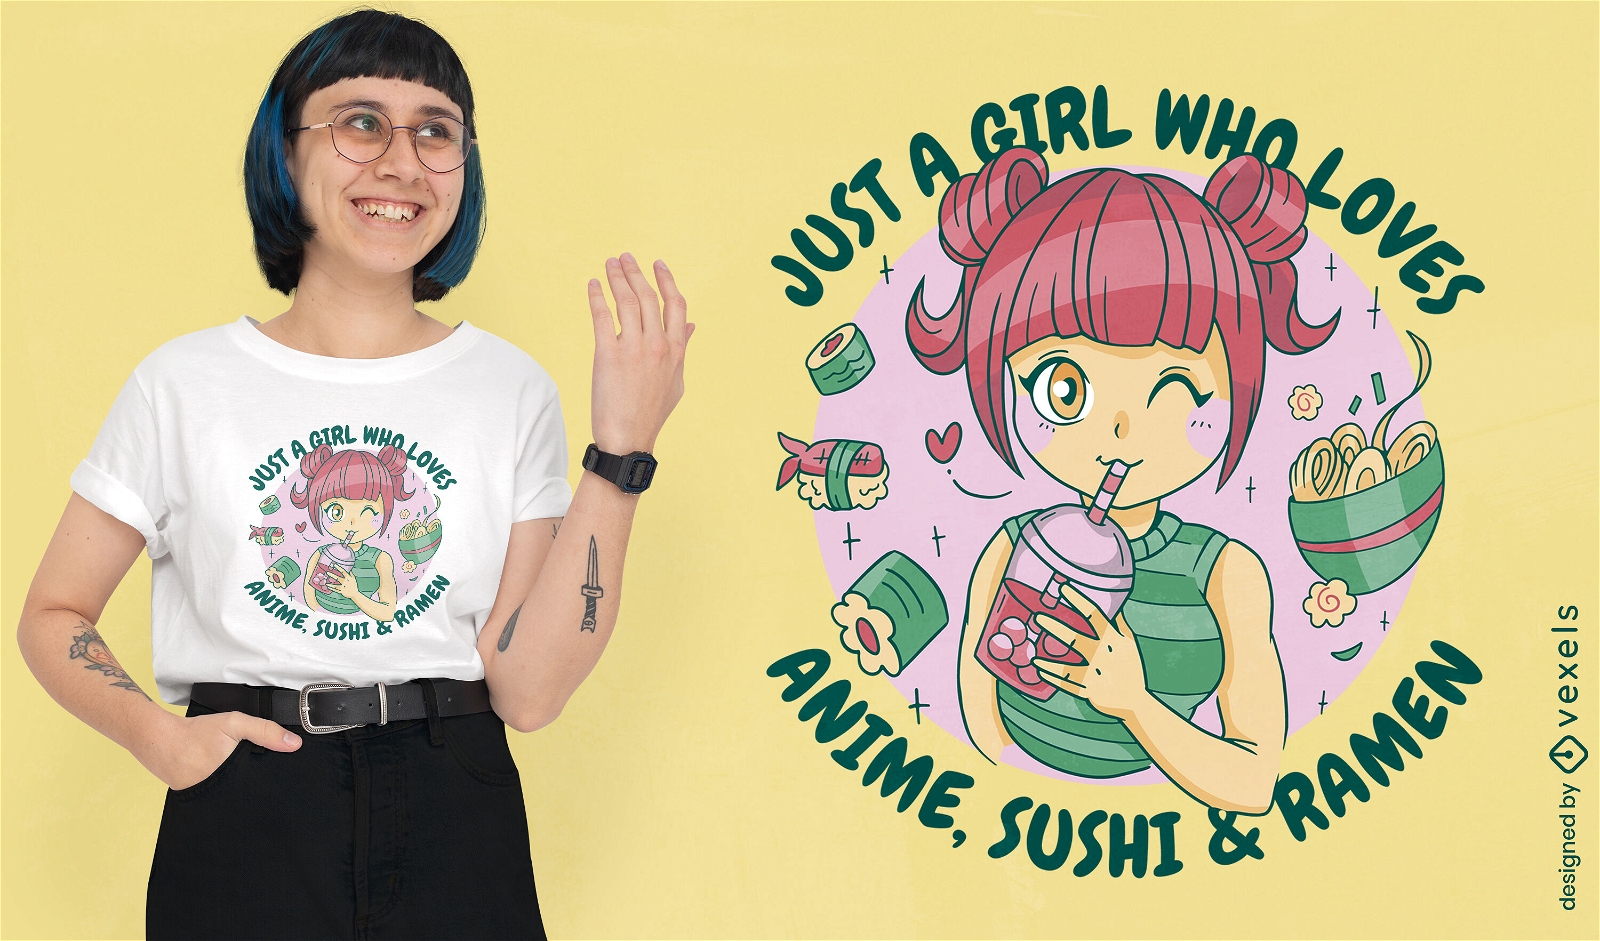 Dise?o de camiseta con cita de anime y sushi.